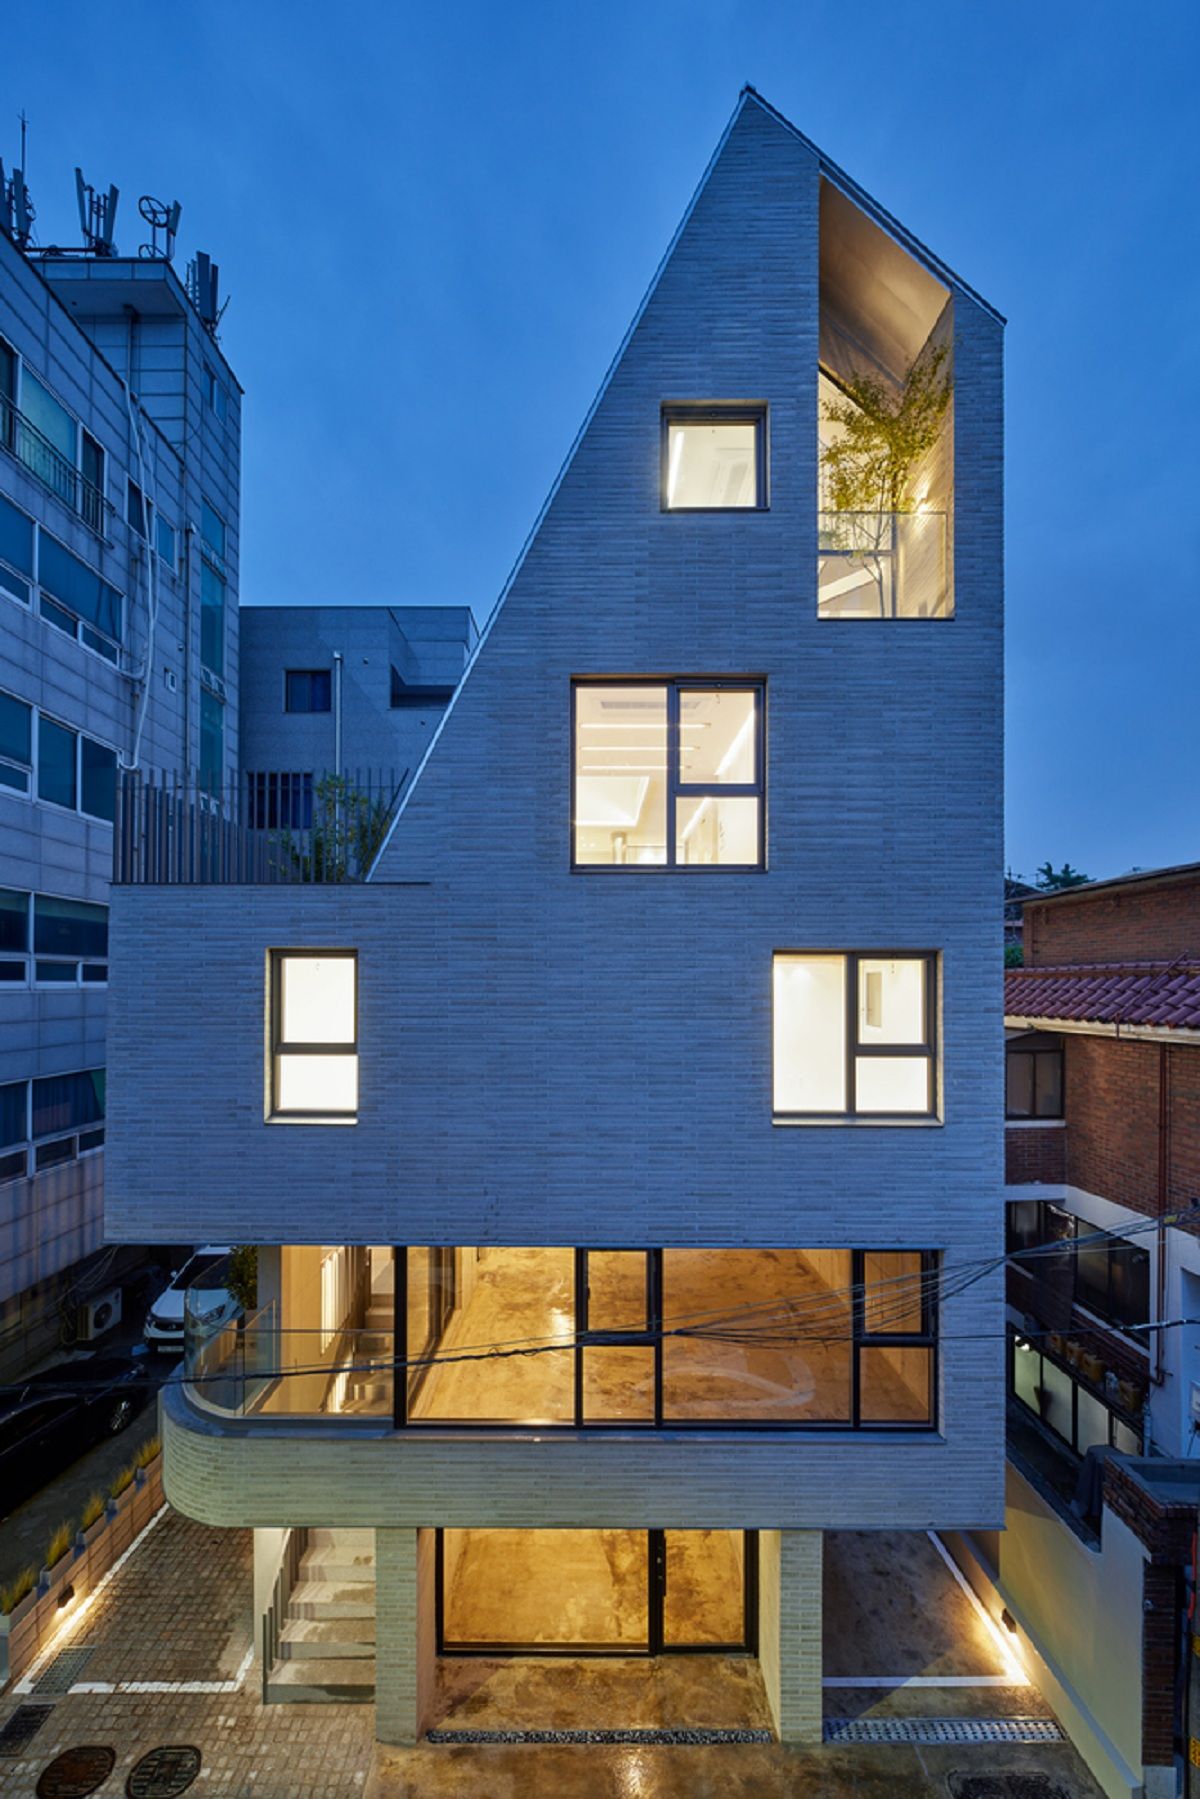 Lee Lee Heon - Tòa nhà phức hợp tái hiện những nét xưa trong đô thị hiện đại  | SOSU architects